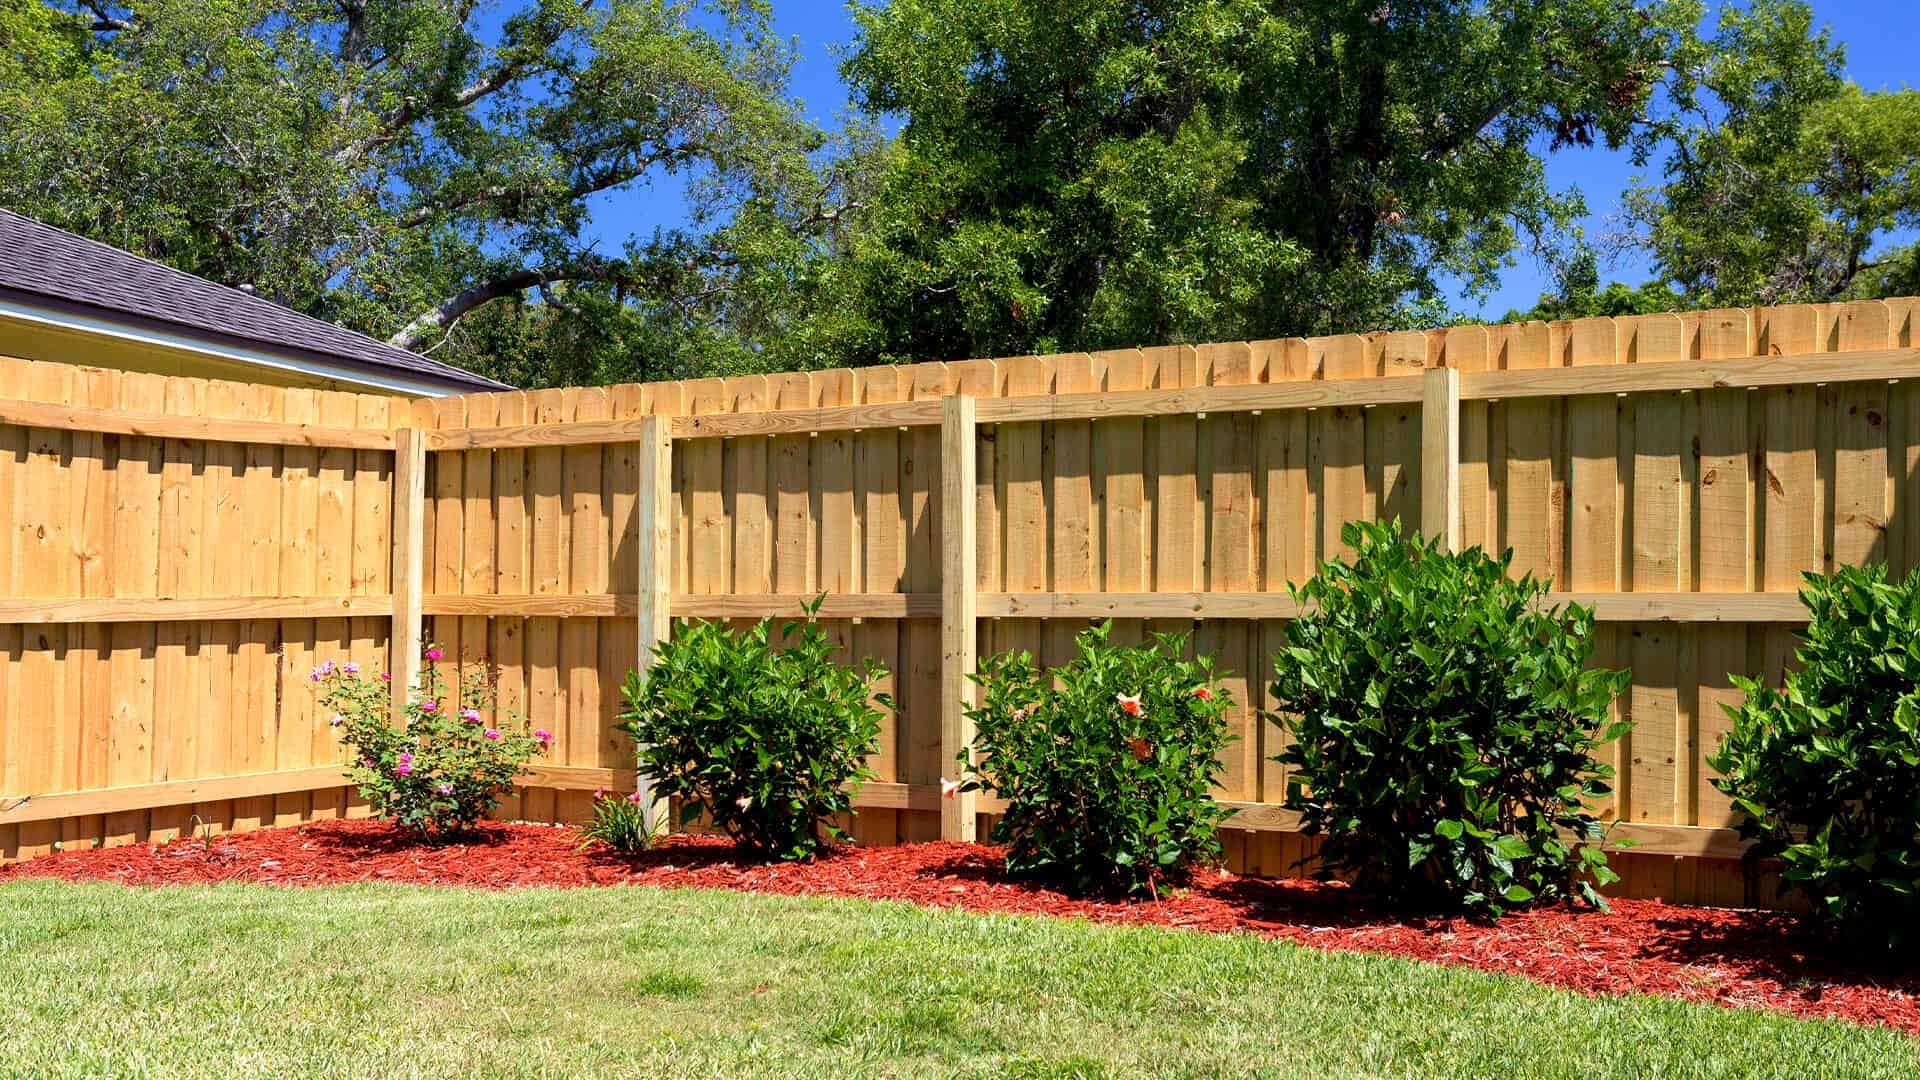 Sarasota Area Fence Company 941 203 3224